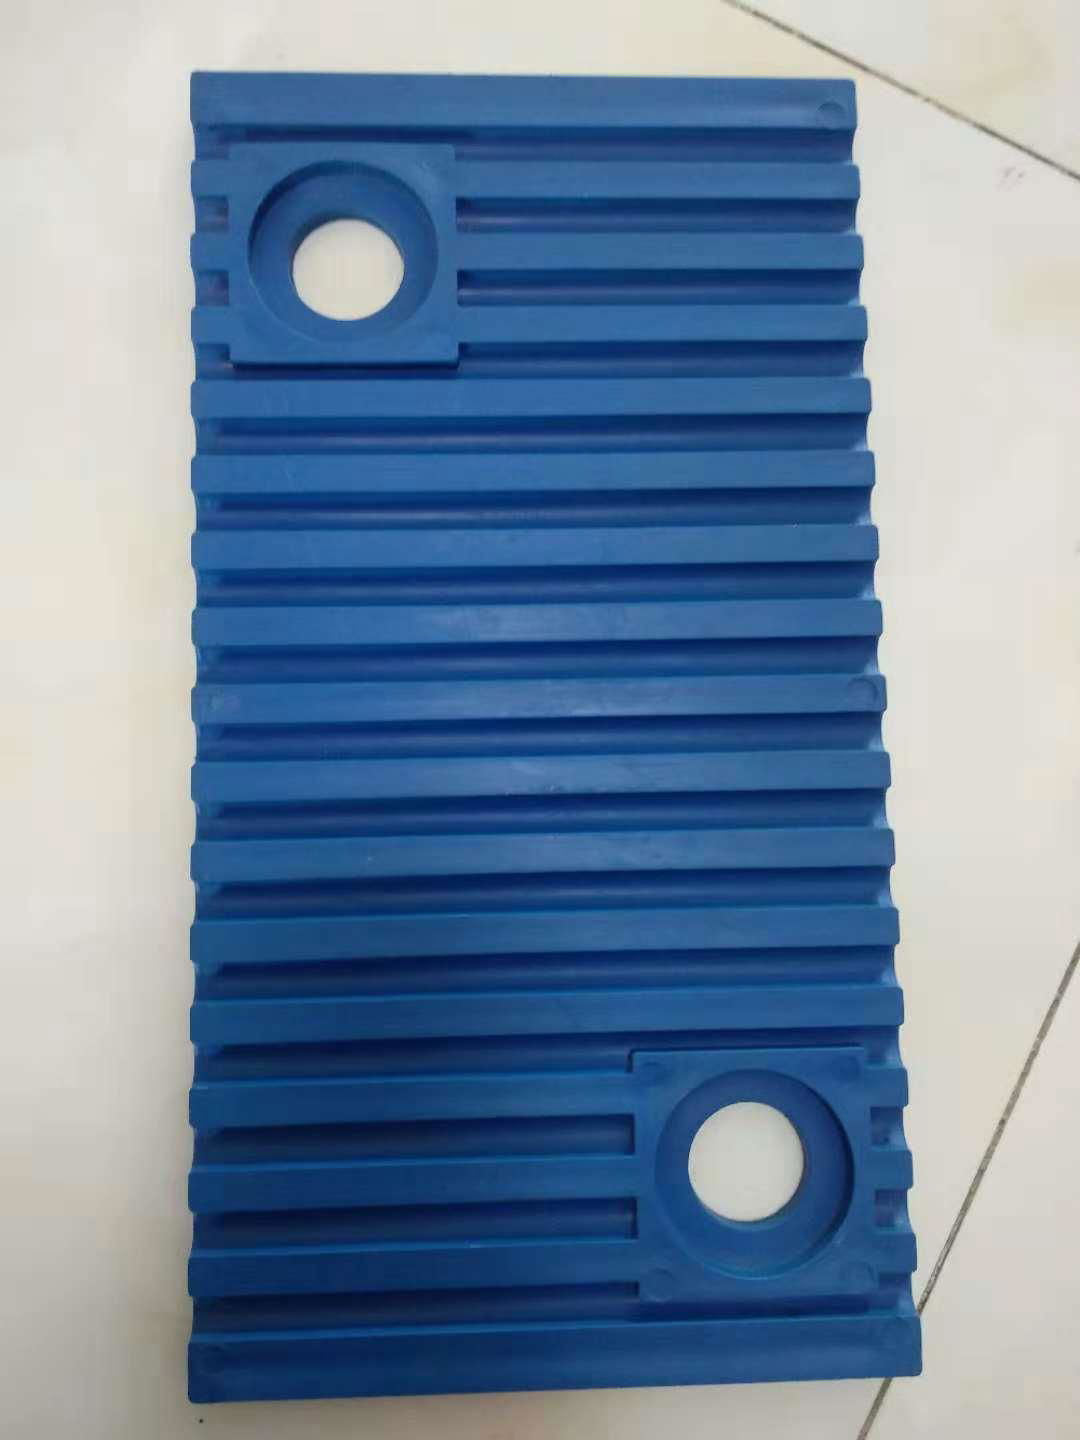 熱塑性聚酯彈性體TPEE高鐵、地鐵減震墊板材料 4